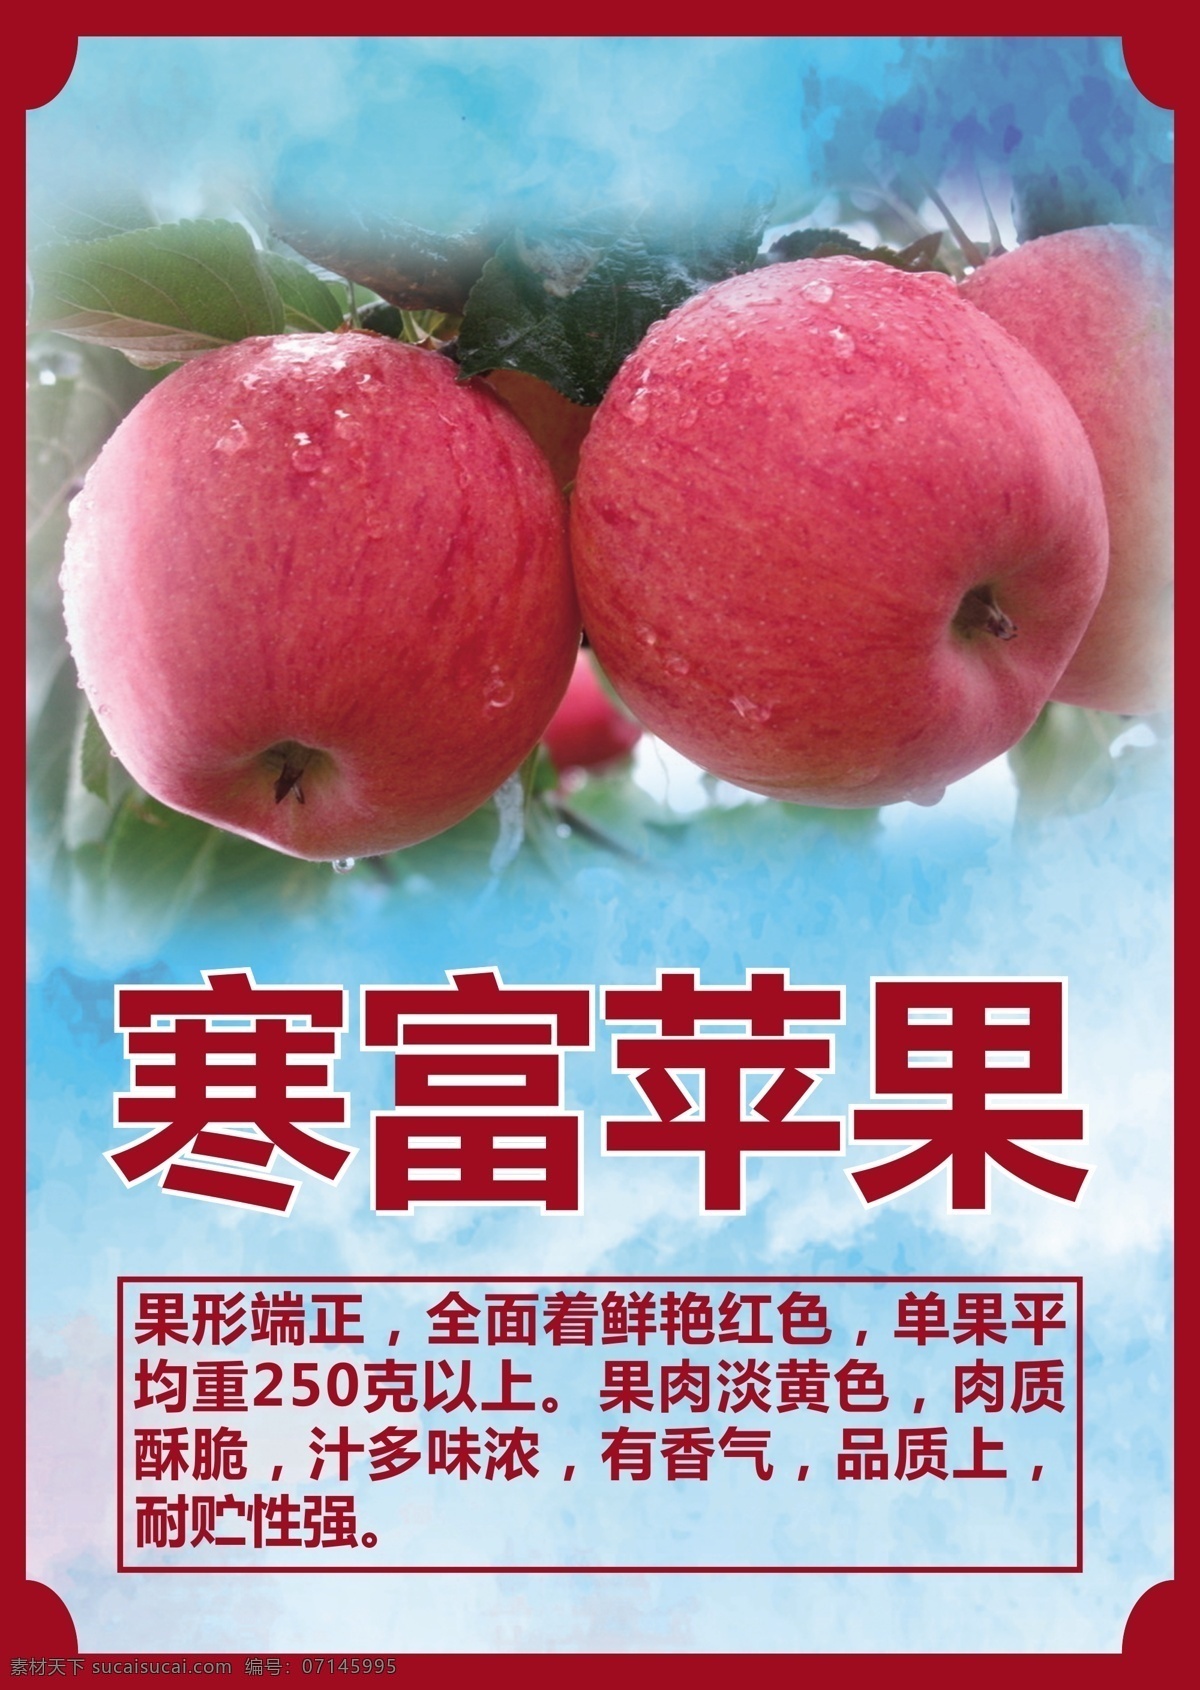 寒富苹果 a4 苹果介绍 特产水果 精品水果 宣传页 画册设计